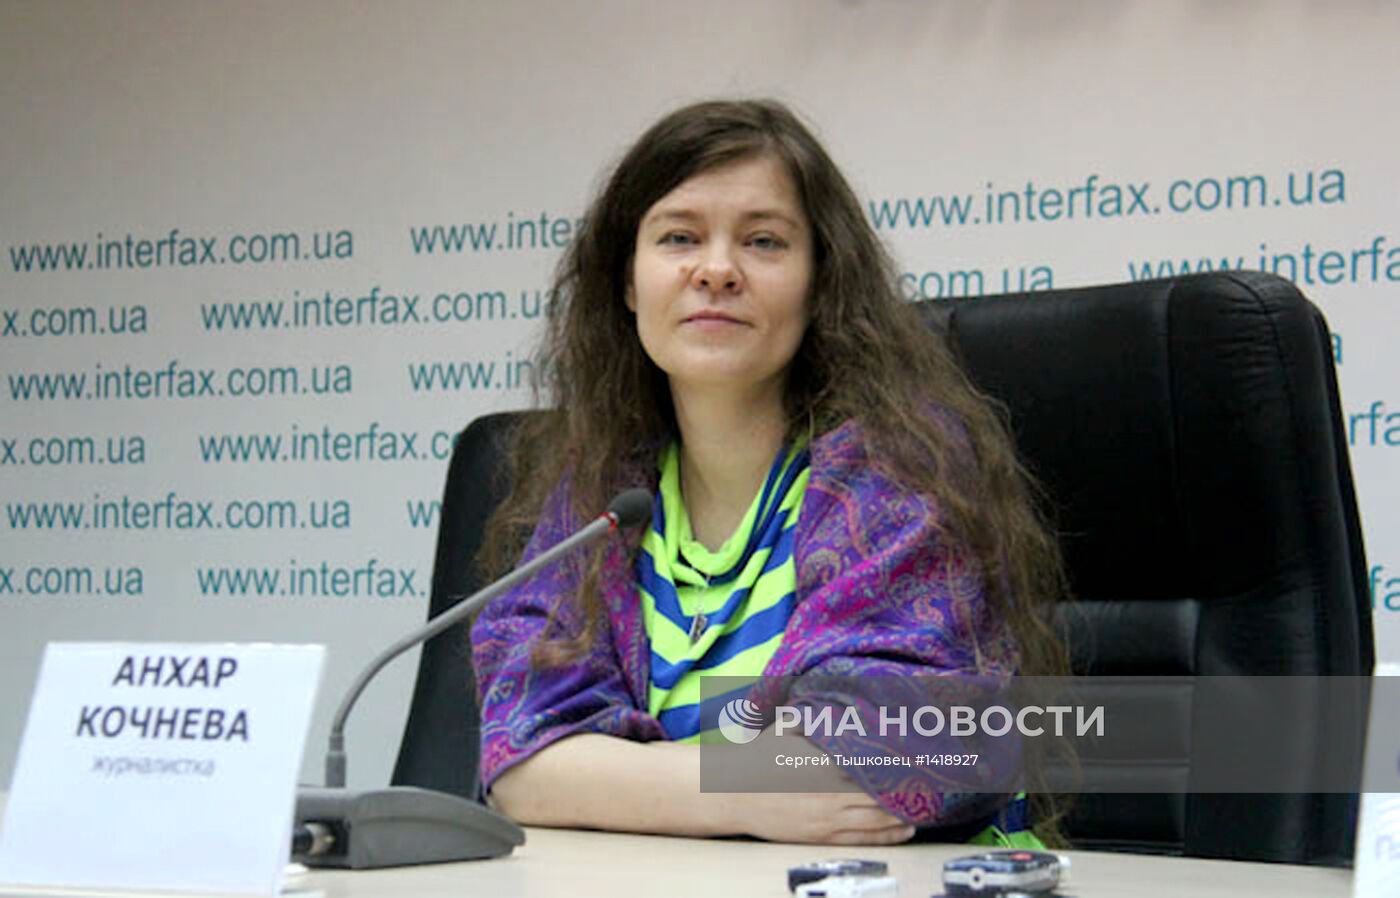 Пресс-конференция Анхар Кочневой в Киеве